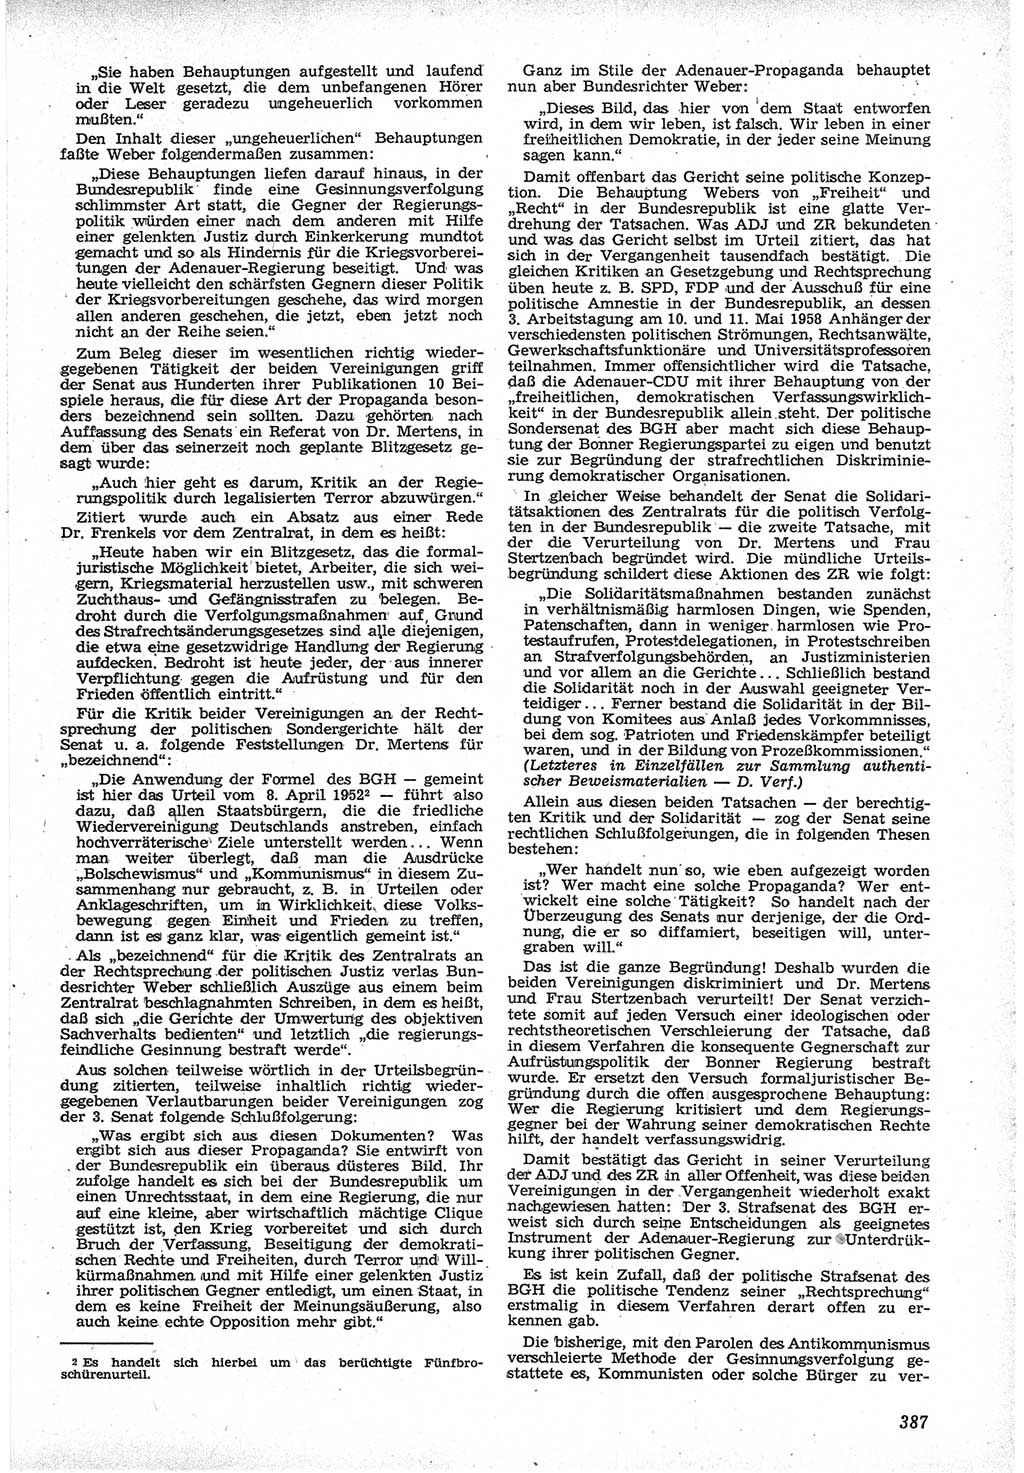 Neue Justiz (NJ), Zeitschrift für Recht und Rechtswissenschaft [Deutsche Demokratische Republik (DDR)], 12. Jahrgang 1958, Seite 387 (NJ DDR 1958, S. 387)